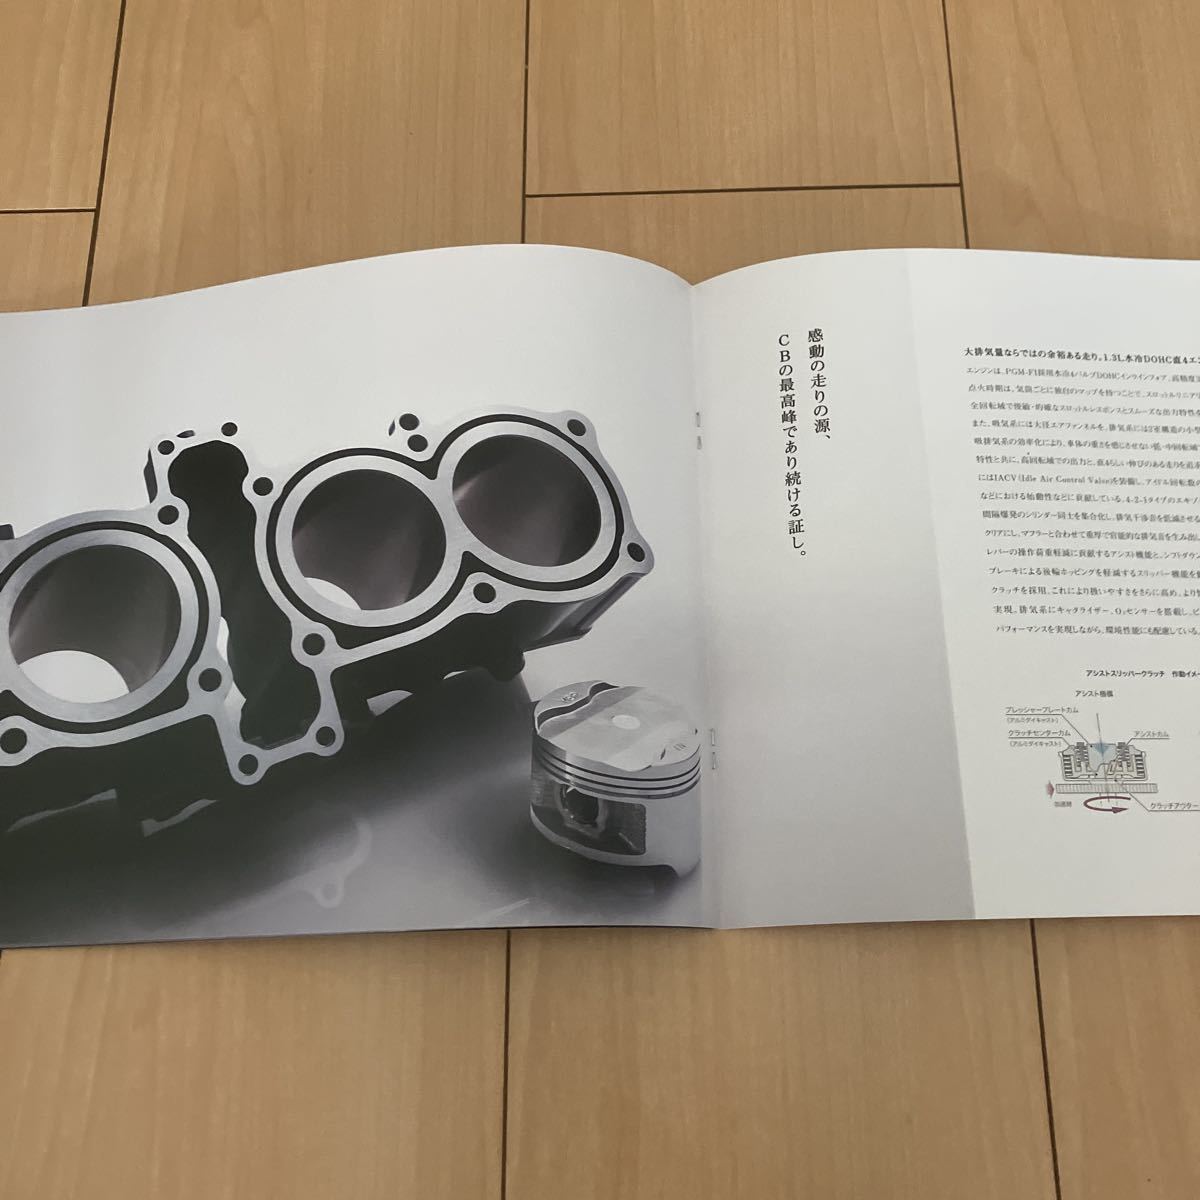 2019年10月版 ホンダ CB1300 カタログ / カスタマイズ・パーツ・カタログ (231018)の画像9